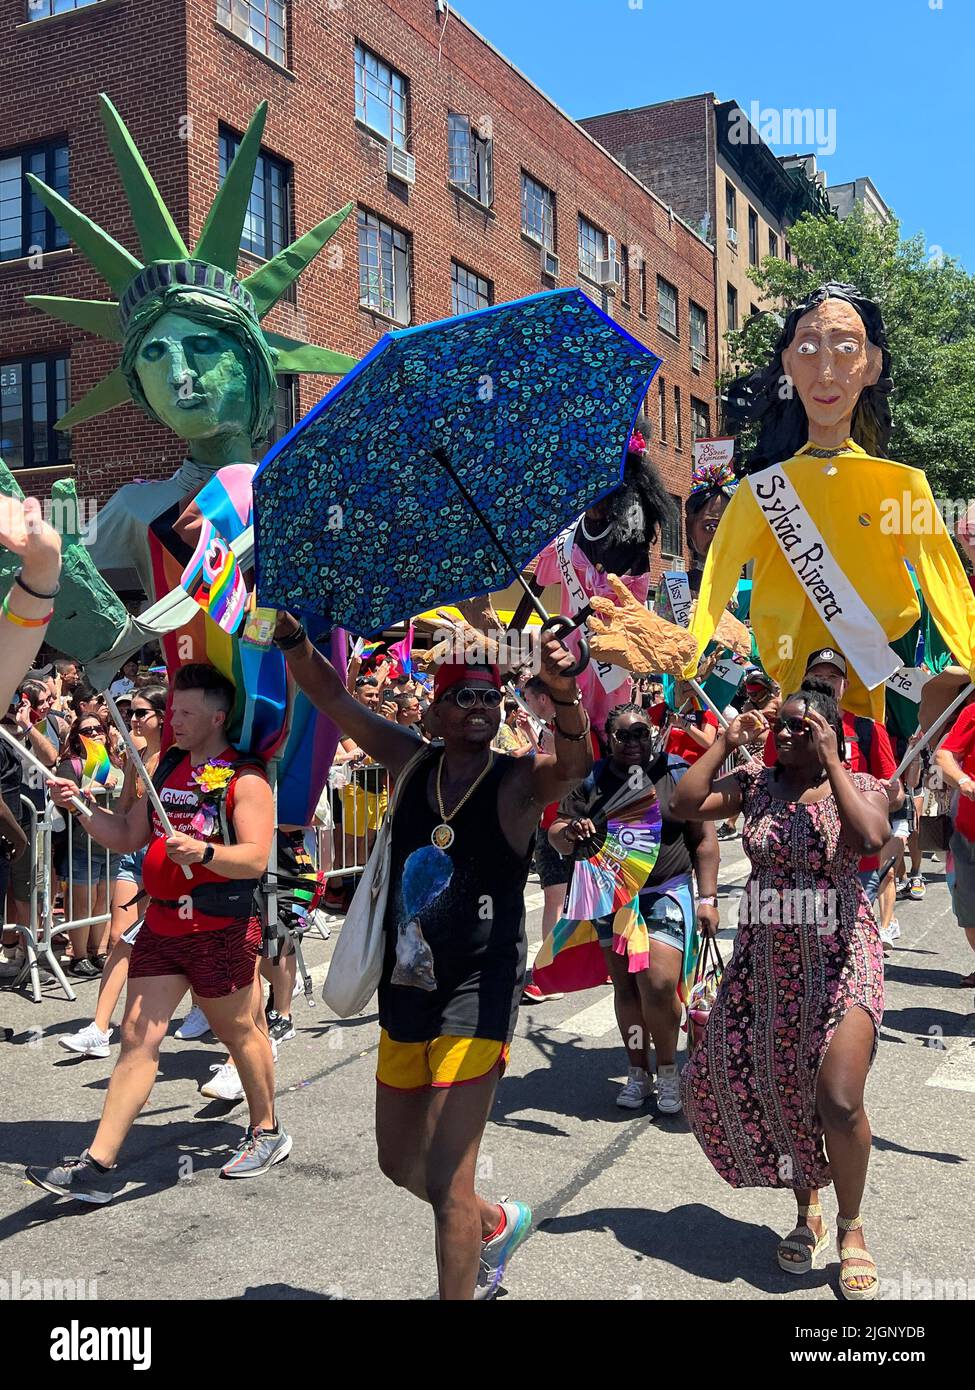 Le défilé annuel gay Pride revient en mars sur 5th Avenue et se termine sur Christopher Street dans Greenwich Village après une pause de 3 ans en raison de la pandémie Covid-19. Grande marionnette de Sylvia Rivera célèbre activiste des droits gay mieux connue pour ses actions dans le soulèvement de Stonewall en 1969. Banque D'Images